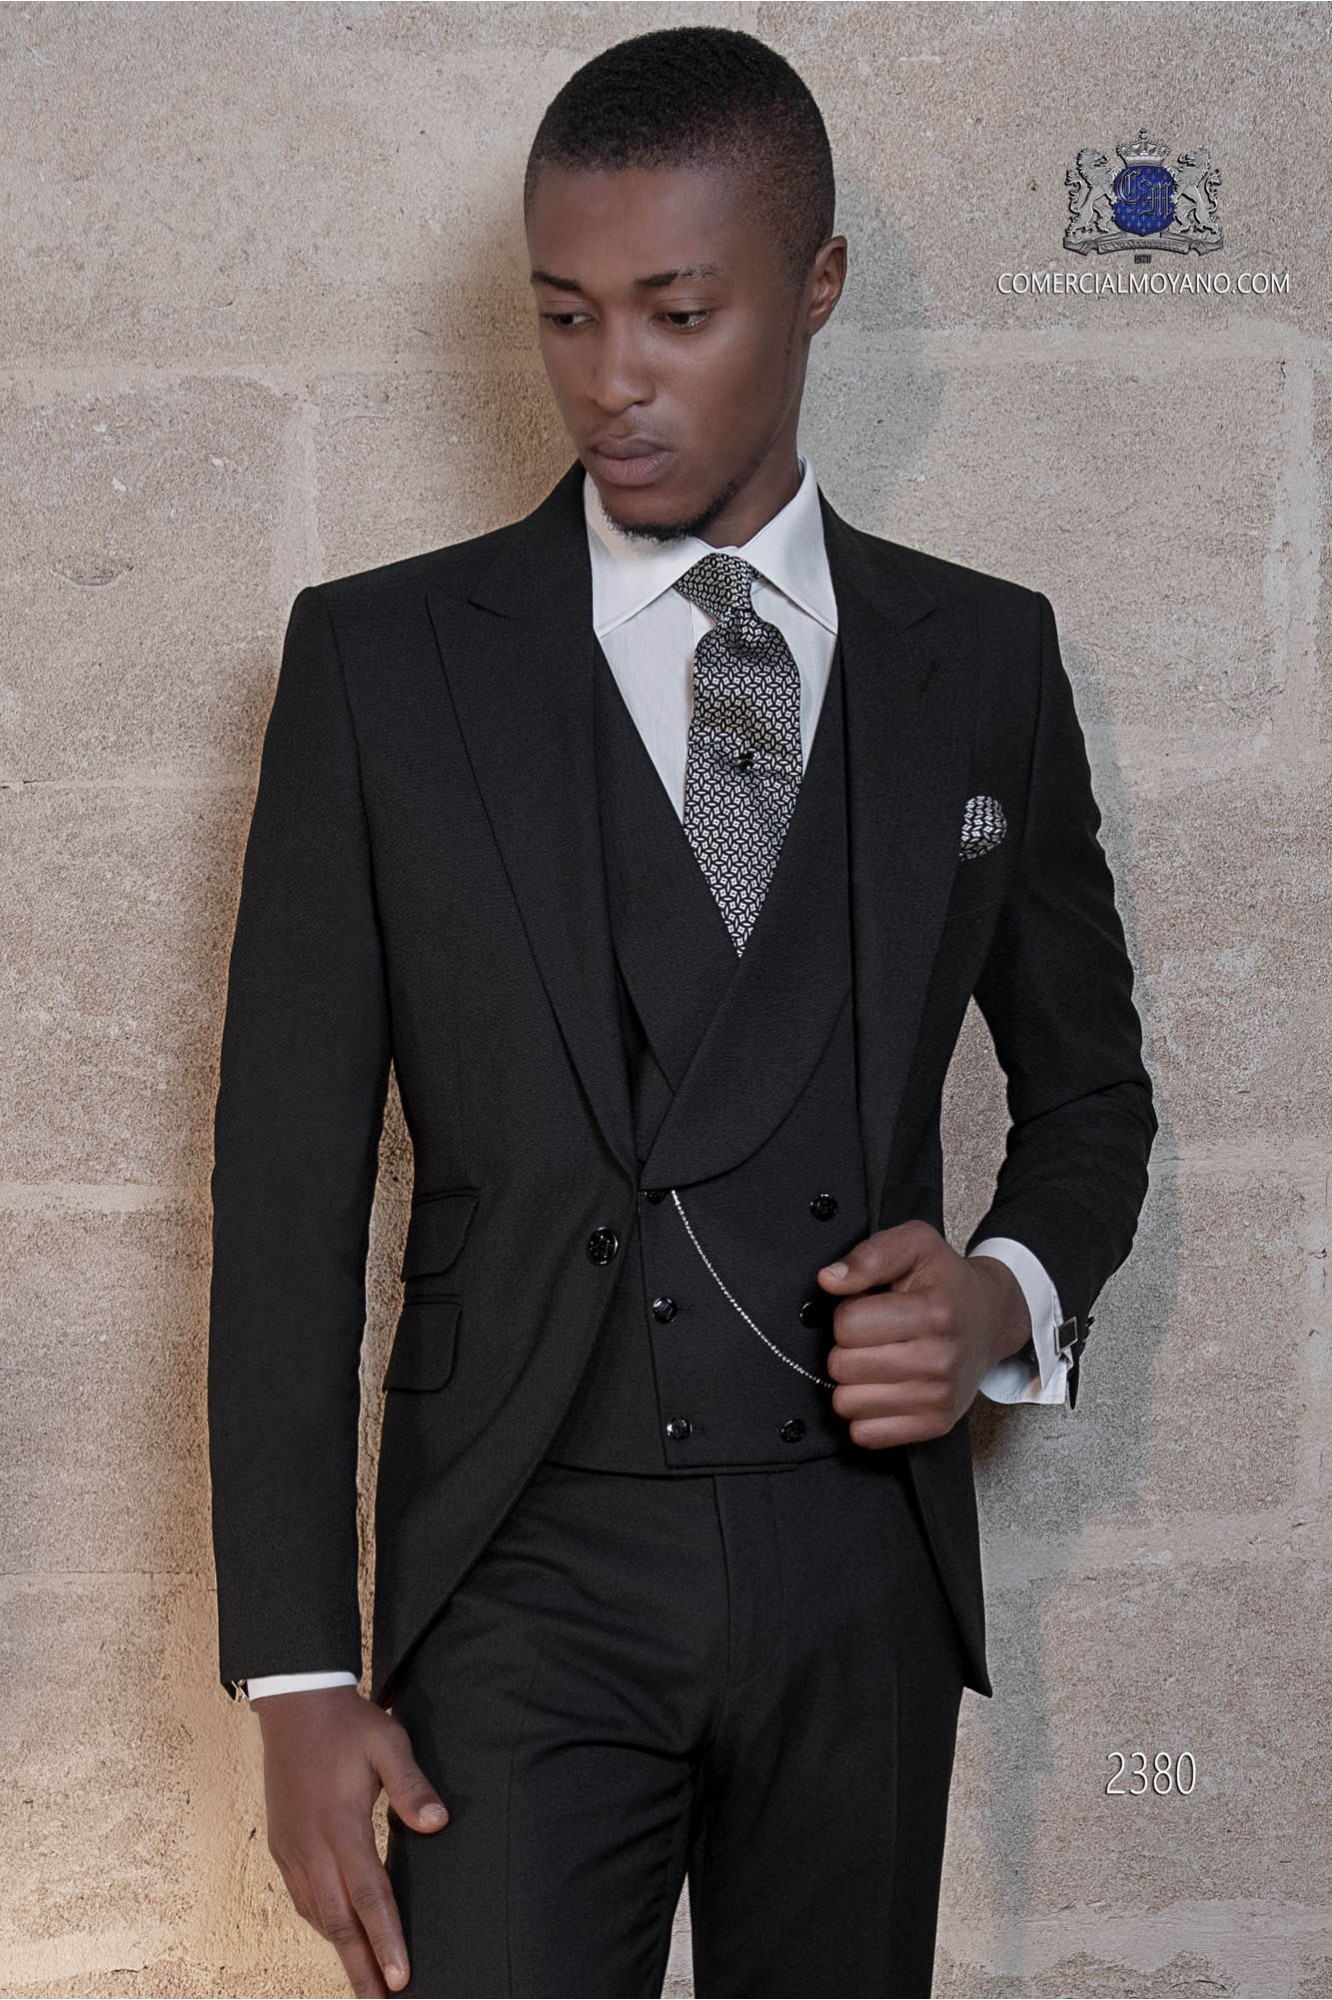 Traje moderno negro mixto lana modelo: 2380 Mario Moyano colección Gentleman